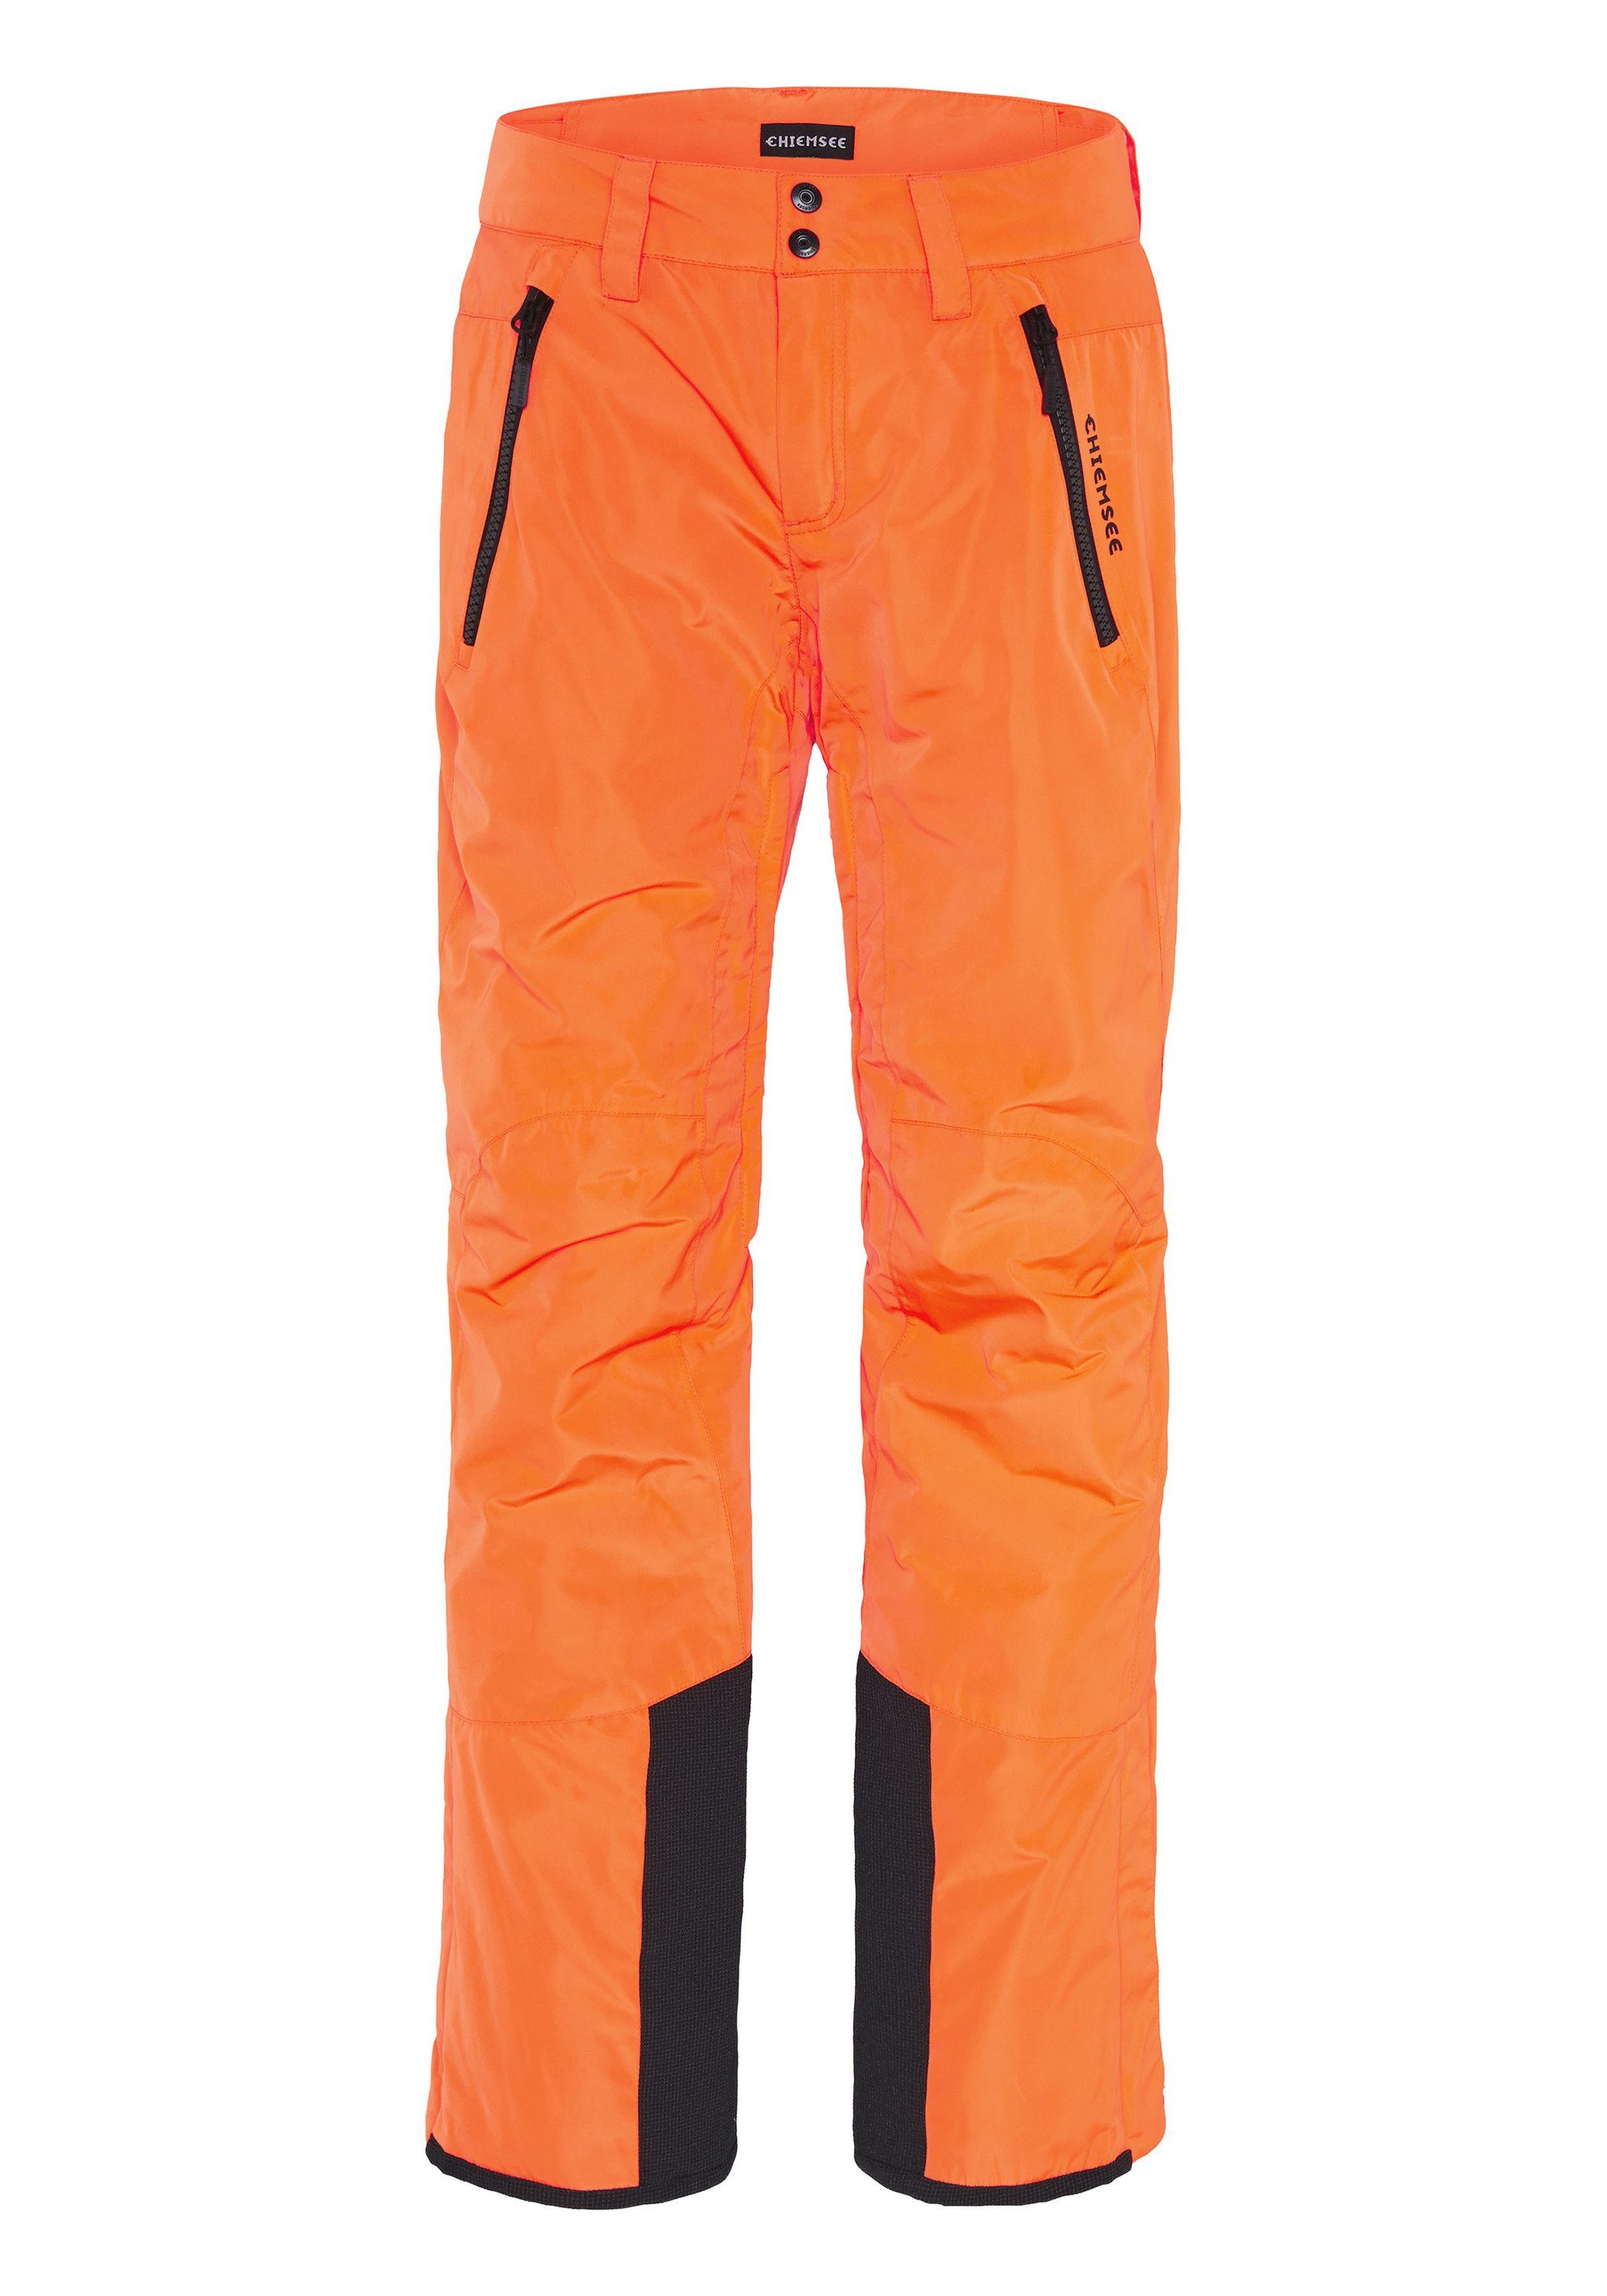 Chiemsee Sporthose Skihose 1 orange Schneefang mit